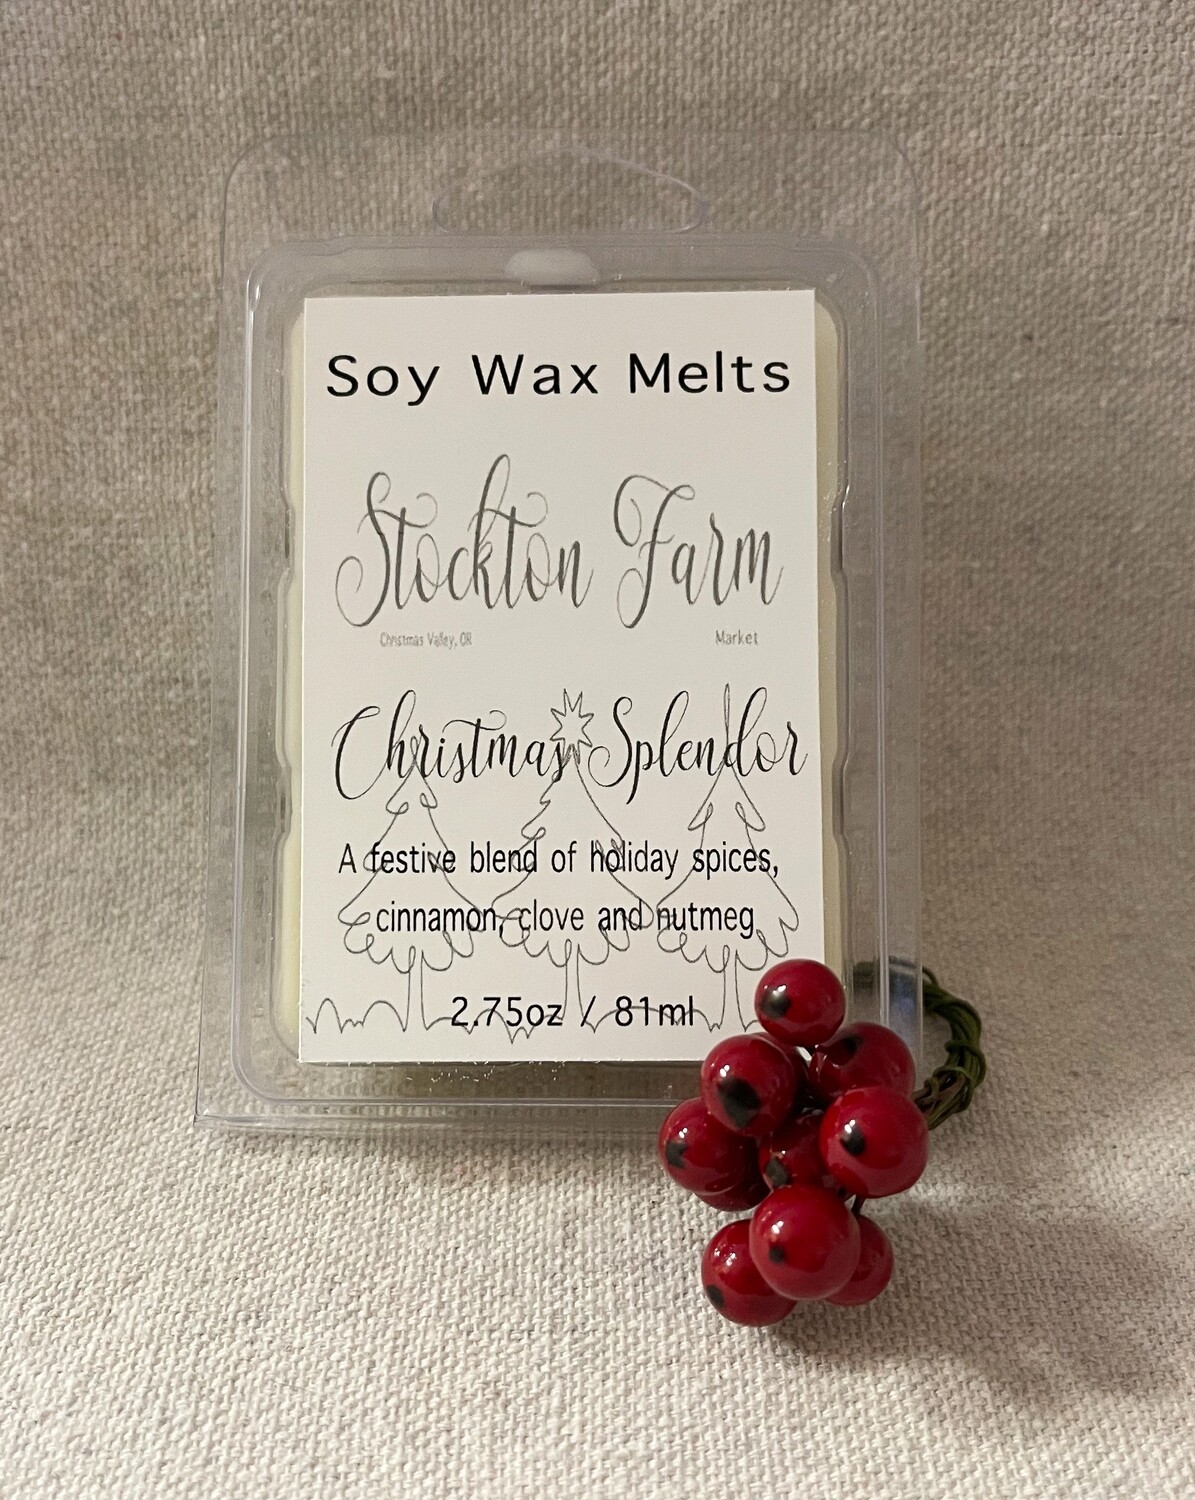 Christmas Splendor Soy Wax Melts Stockton Farm Market